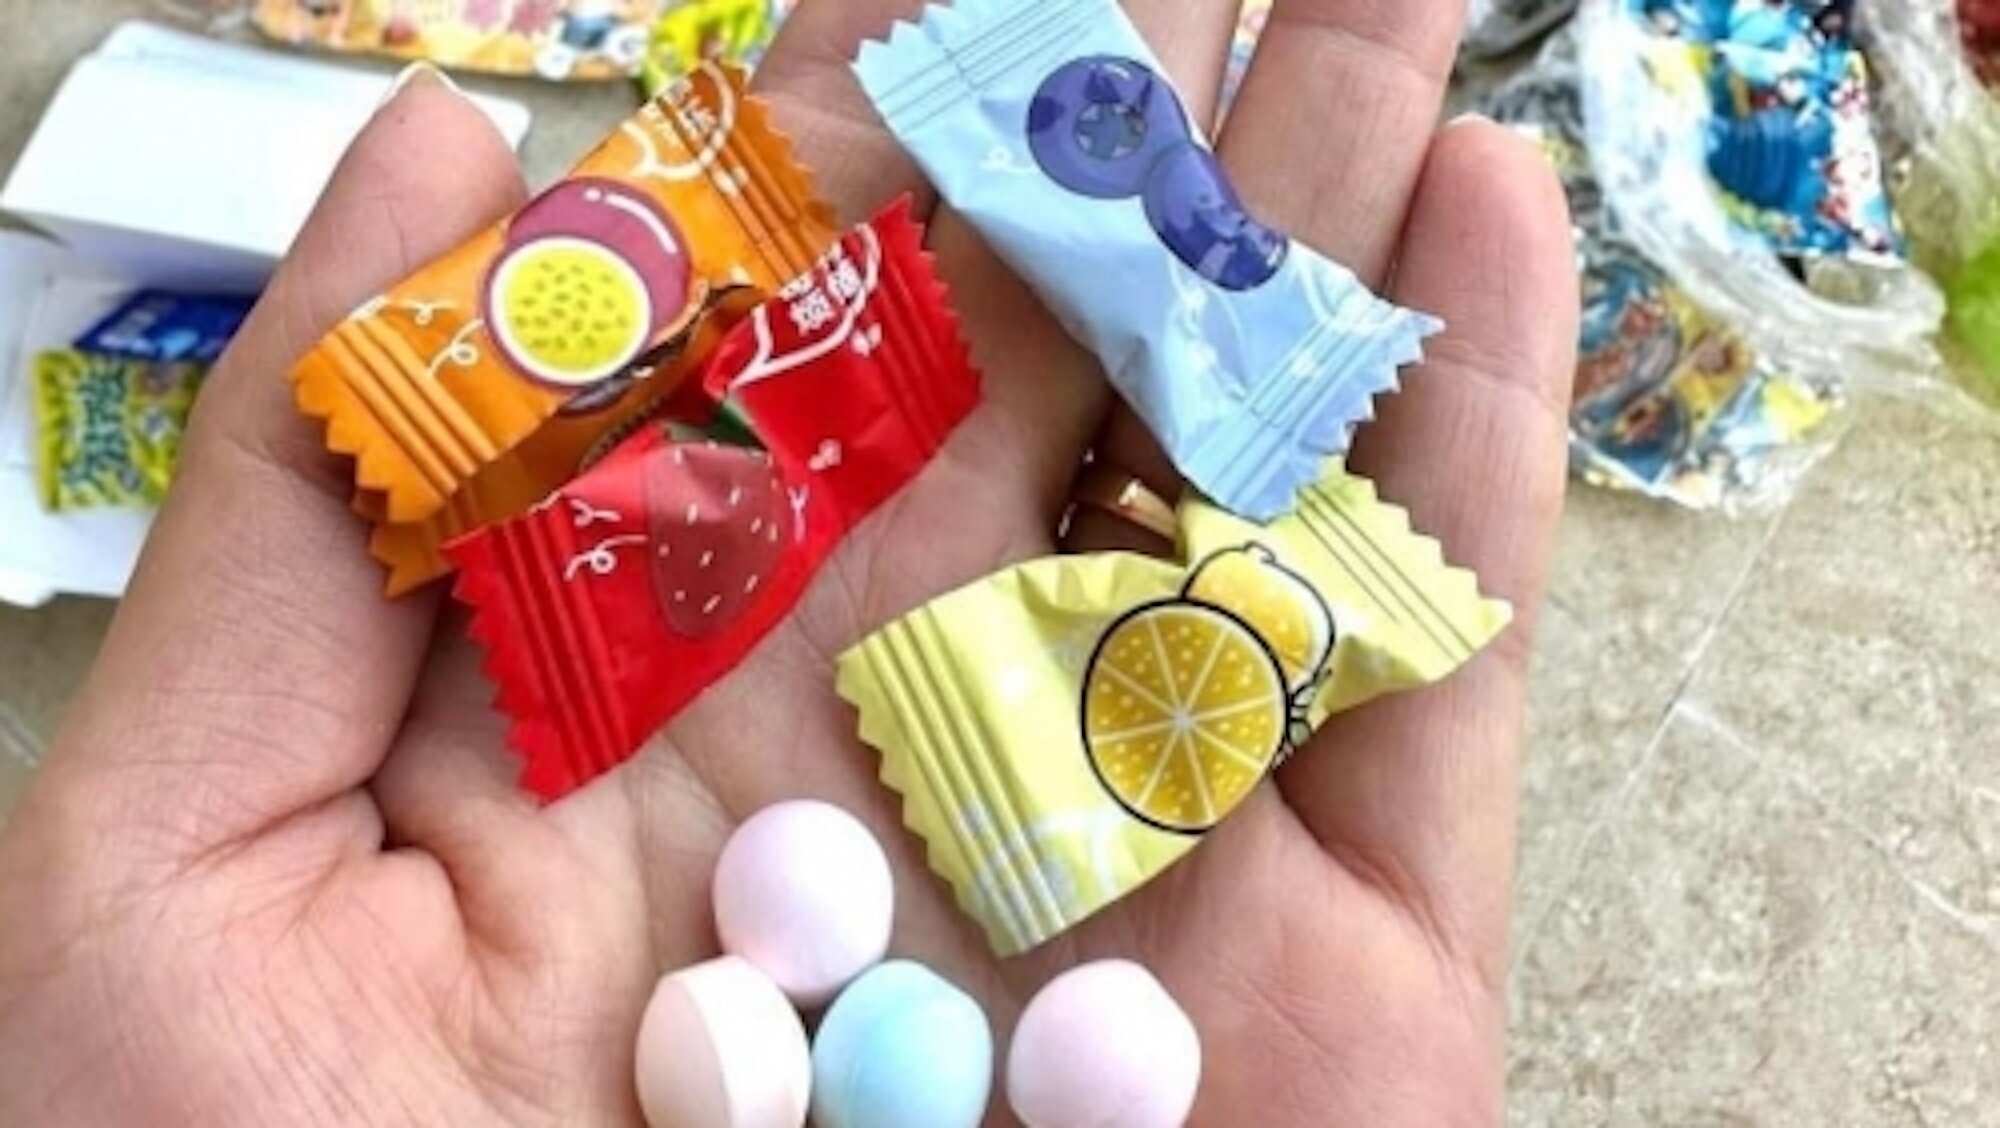 Nhiều trường học trên địa bàn Hà Nội phát đi cảnh báo về một số loại kẹo lạ không rõ nguồn gốc xuất xứ.